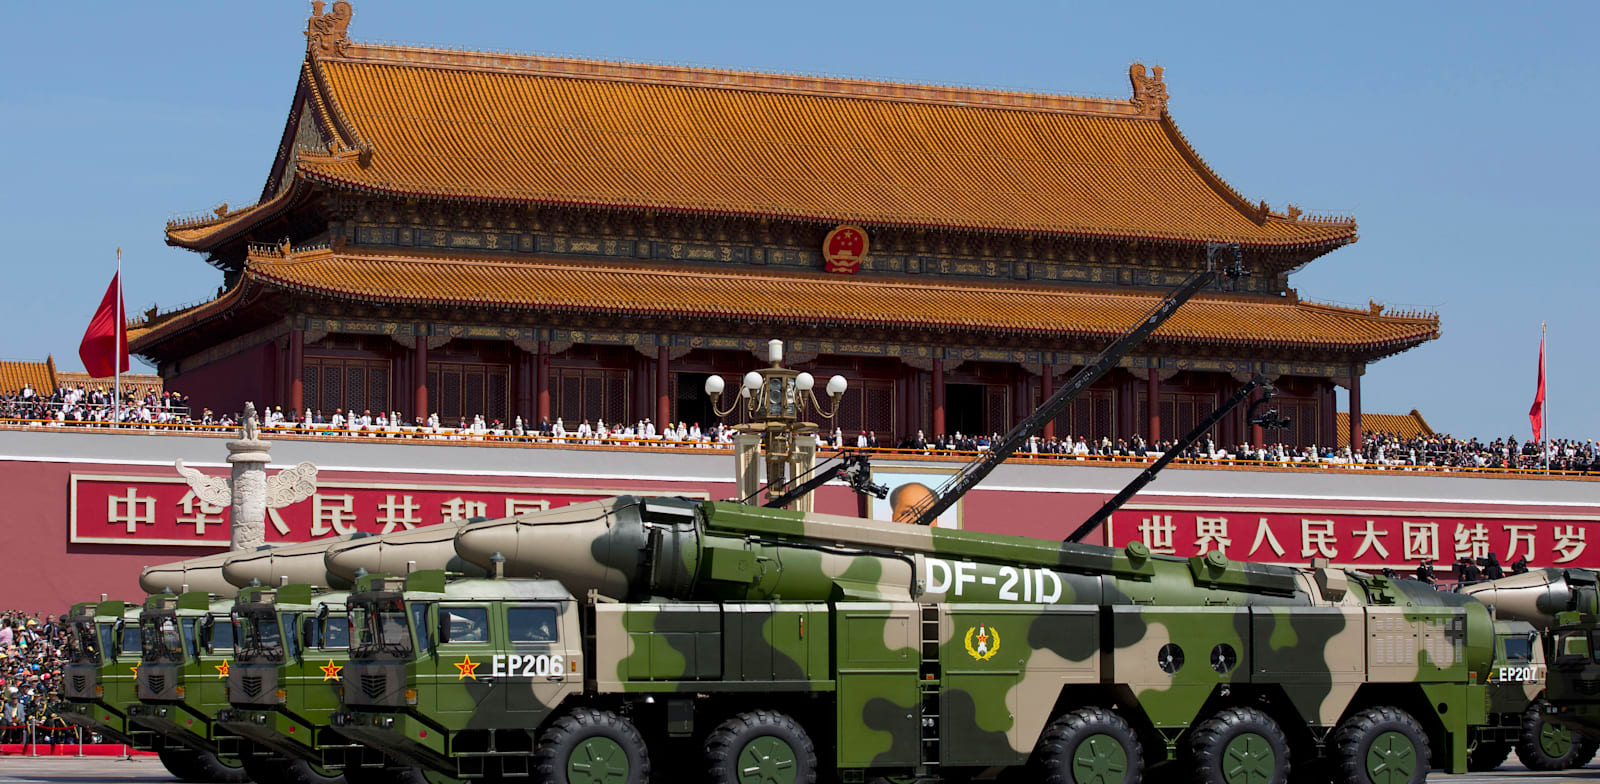 כלי רכב של צבא סין הנושאים טילים בליסטיים כנגד ספינות / צילום: ap, Andy Wong